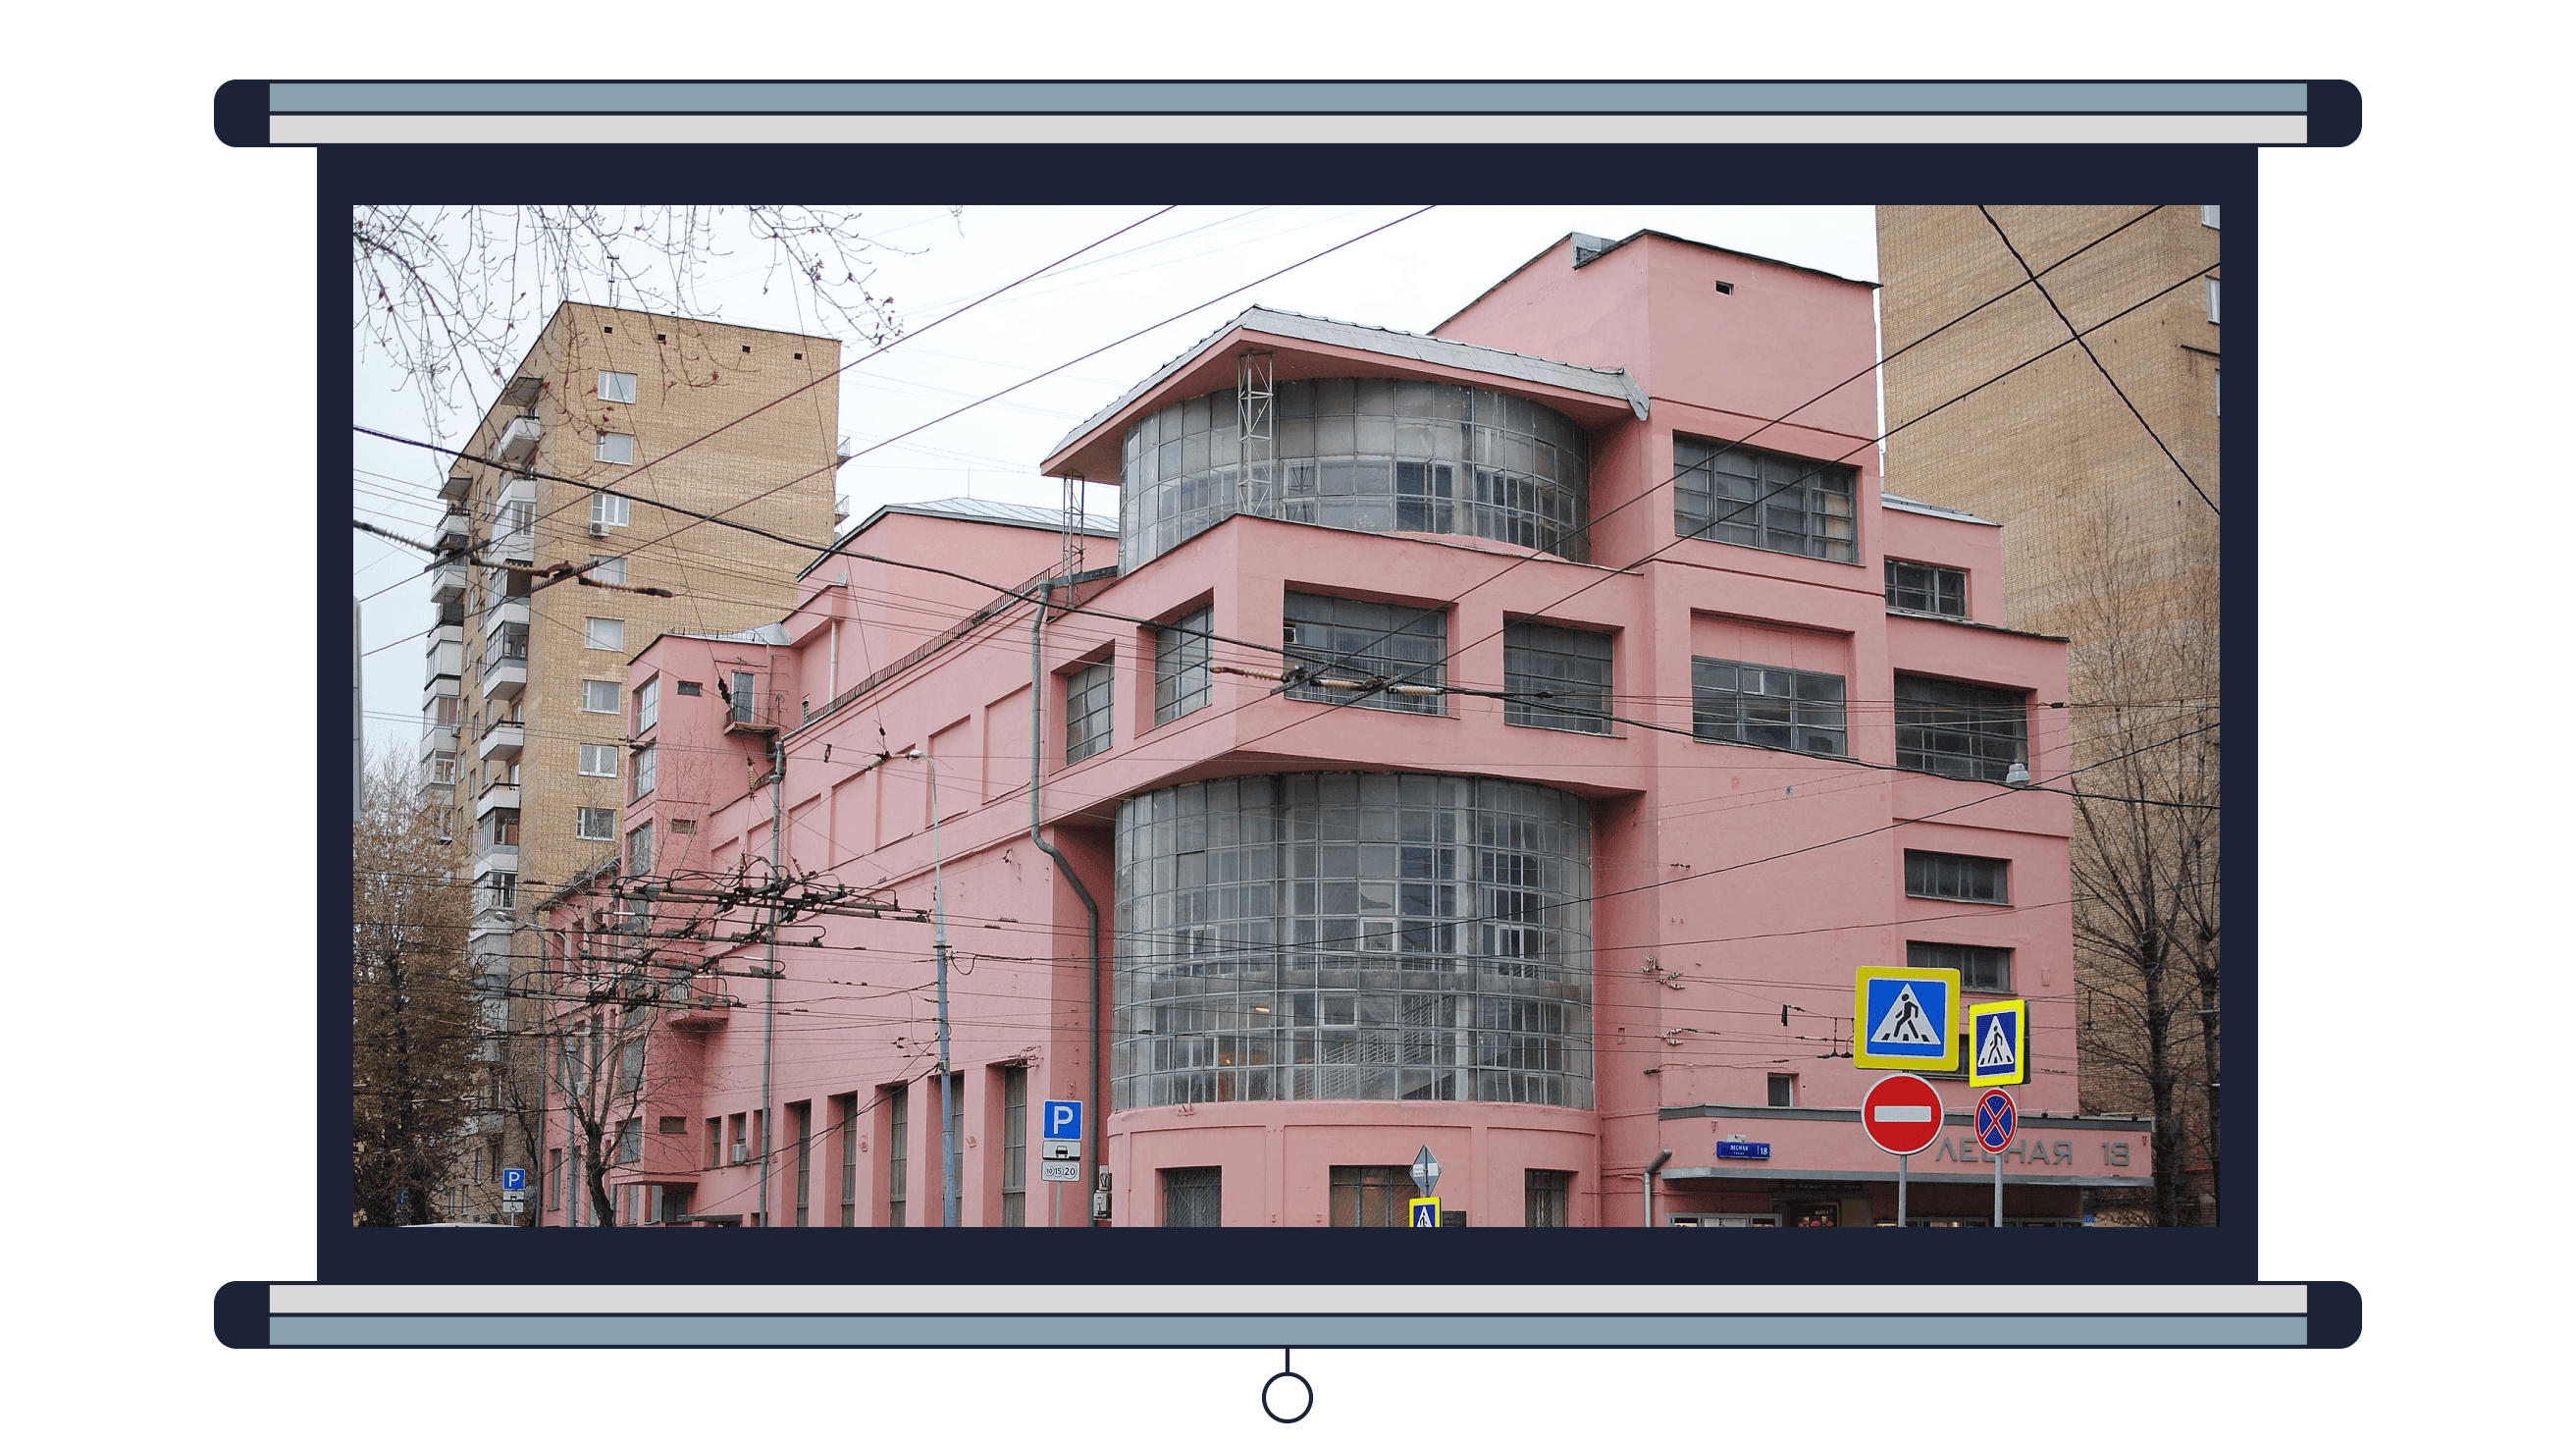 Пример 8. Дом культуры имени Зуева в Москве, архитектор Илья Голосов<br><br>Фото: Martisha / Wikimedia Commons, CC BY-SA 3.0<br>